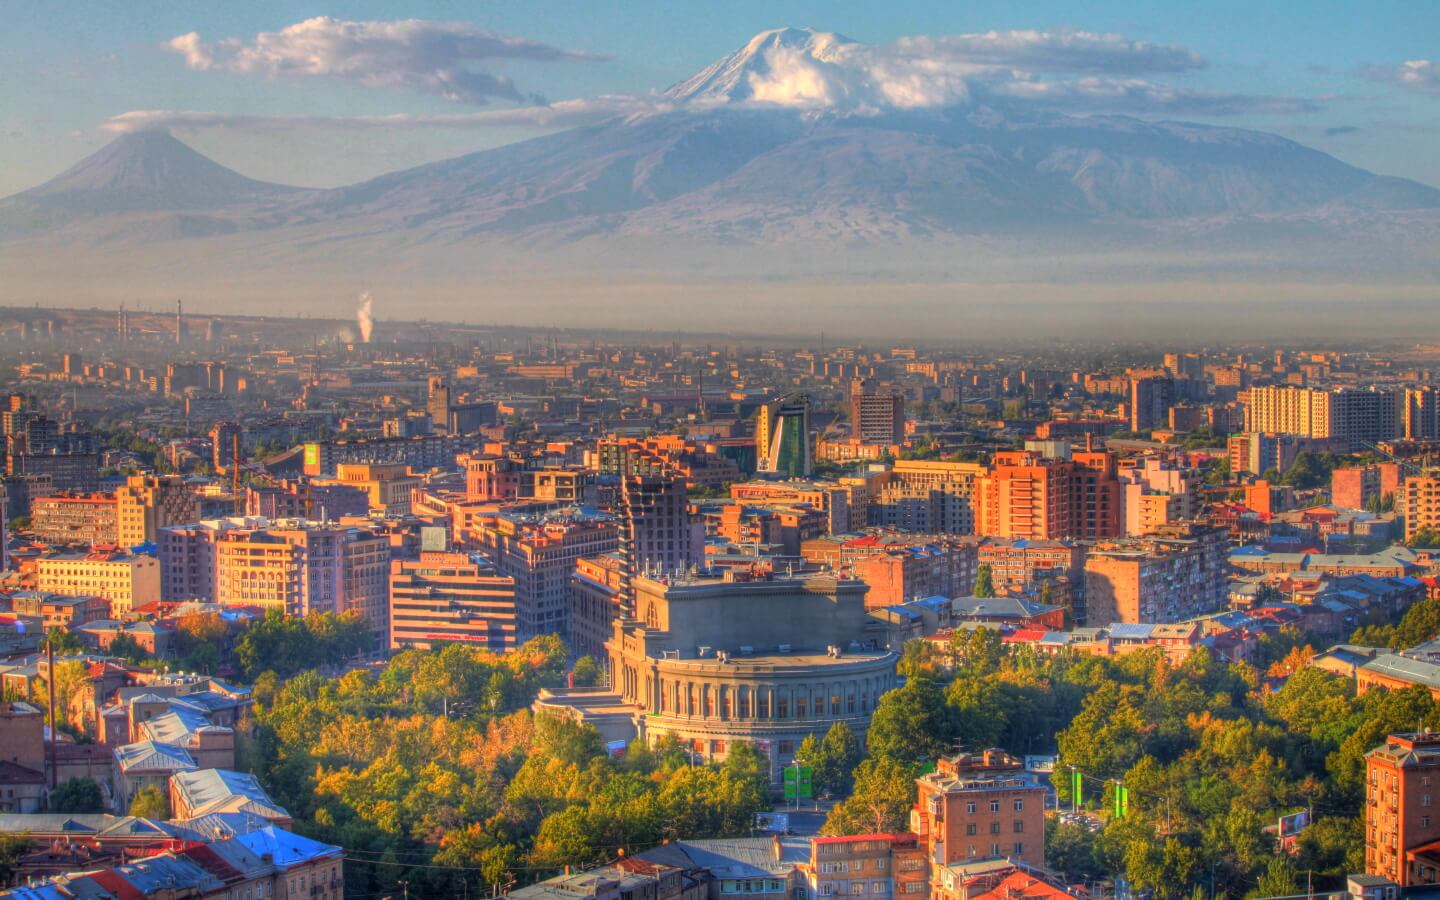 ՄԱԿ զբոսաշրջության համաշխարհային կազմակերպության եվրոպական հանձնաժողովի 67-րդ նիստը տեղի կունենա Երևանում